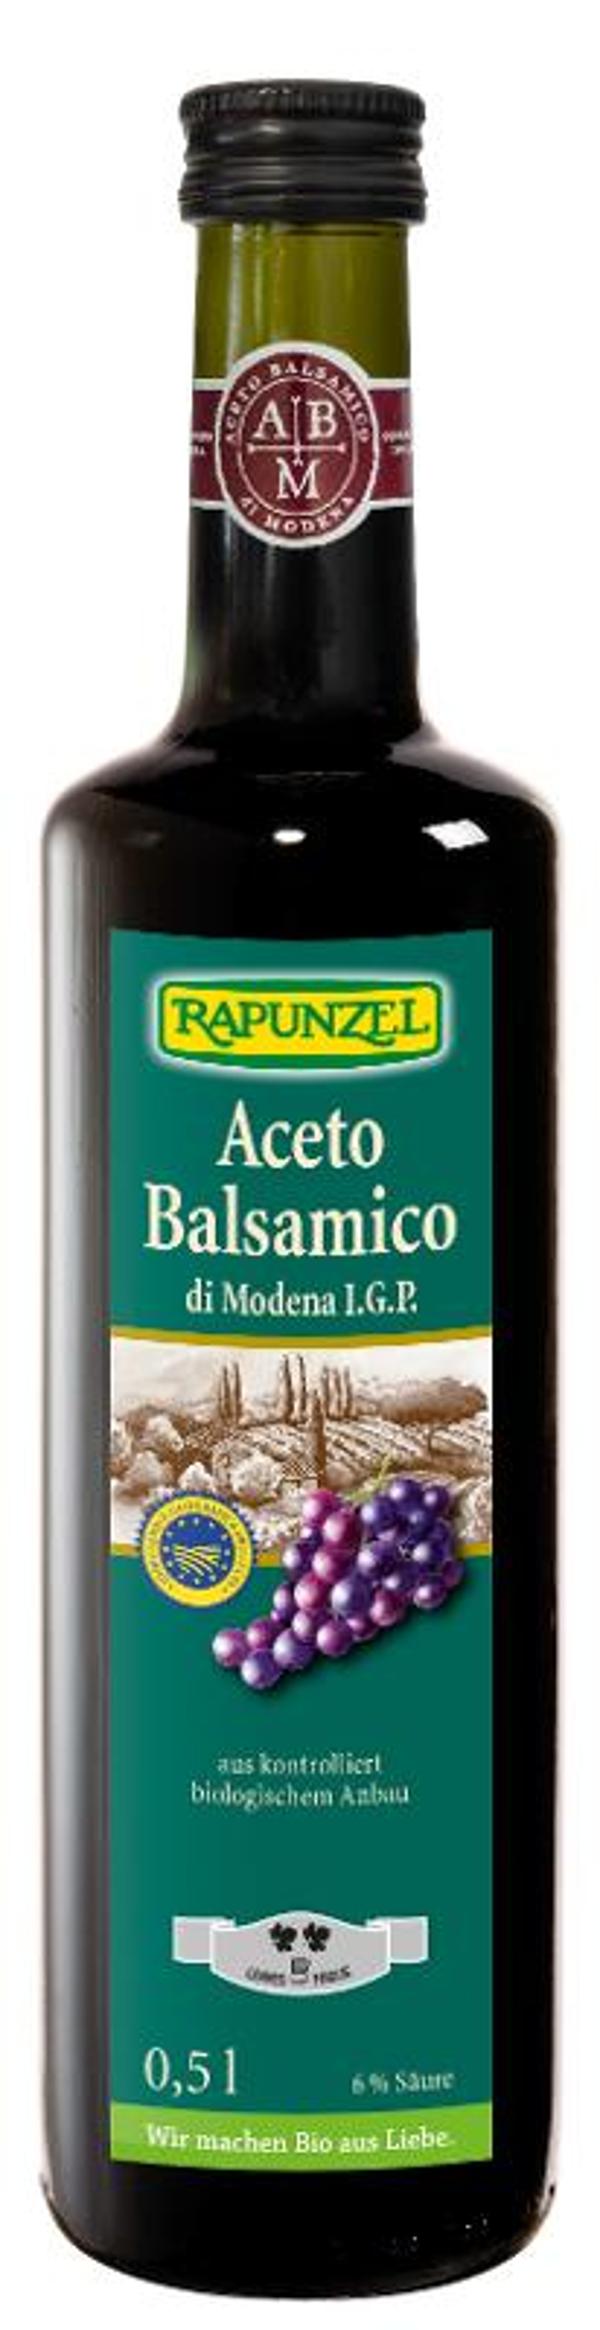 Produktfoto zu Aceto Balsamico di Modena IGP, 0,5 l